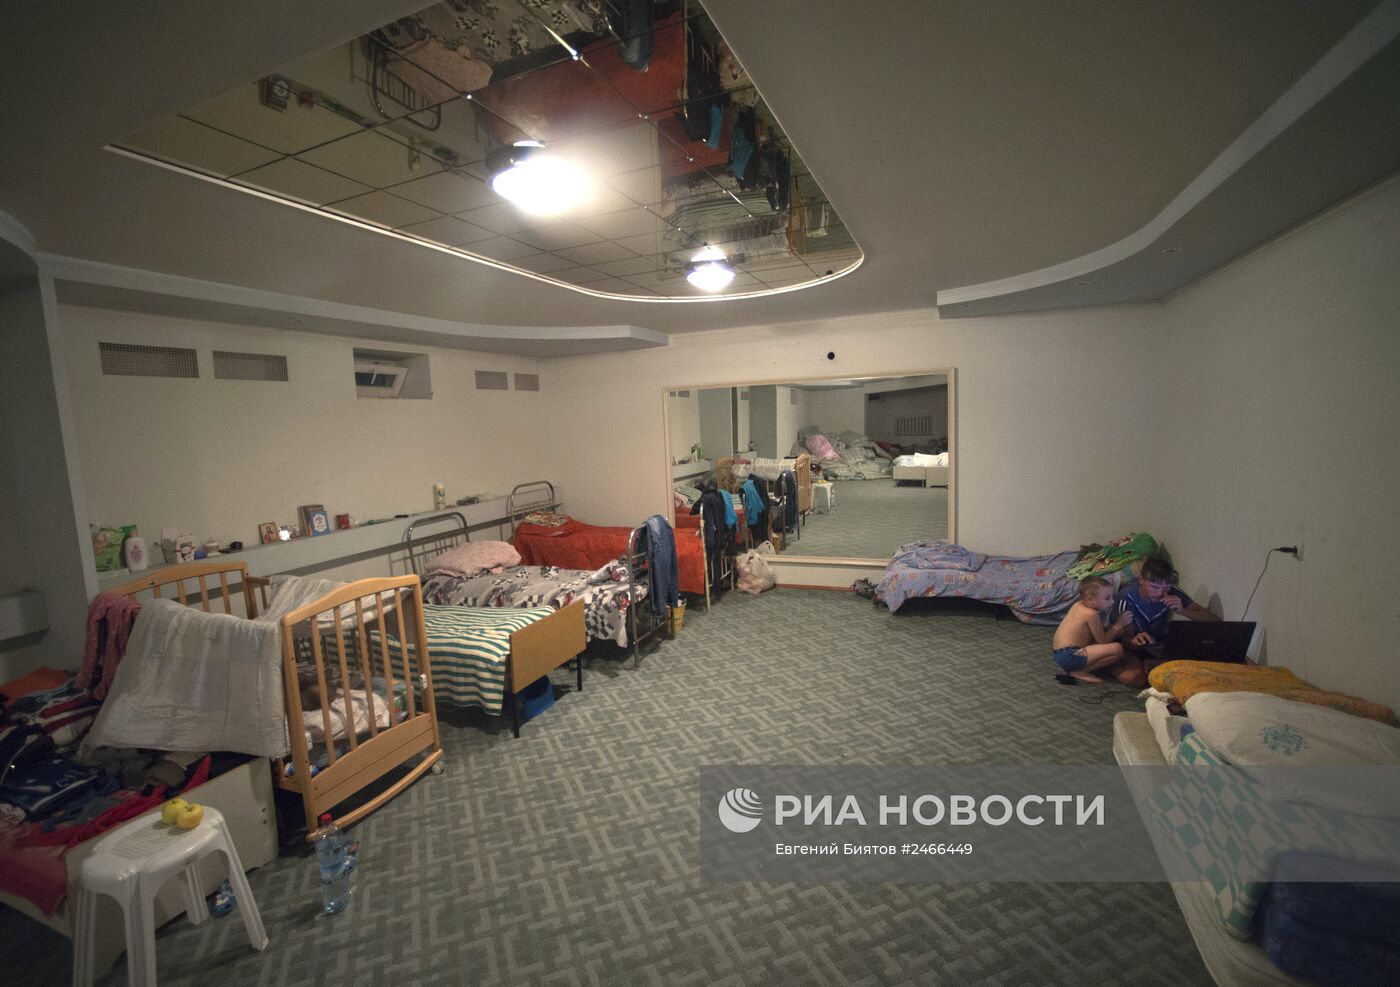 Группа добровольцев из Ростова-на-Дону помогает беженцам из Украины